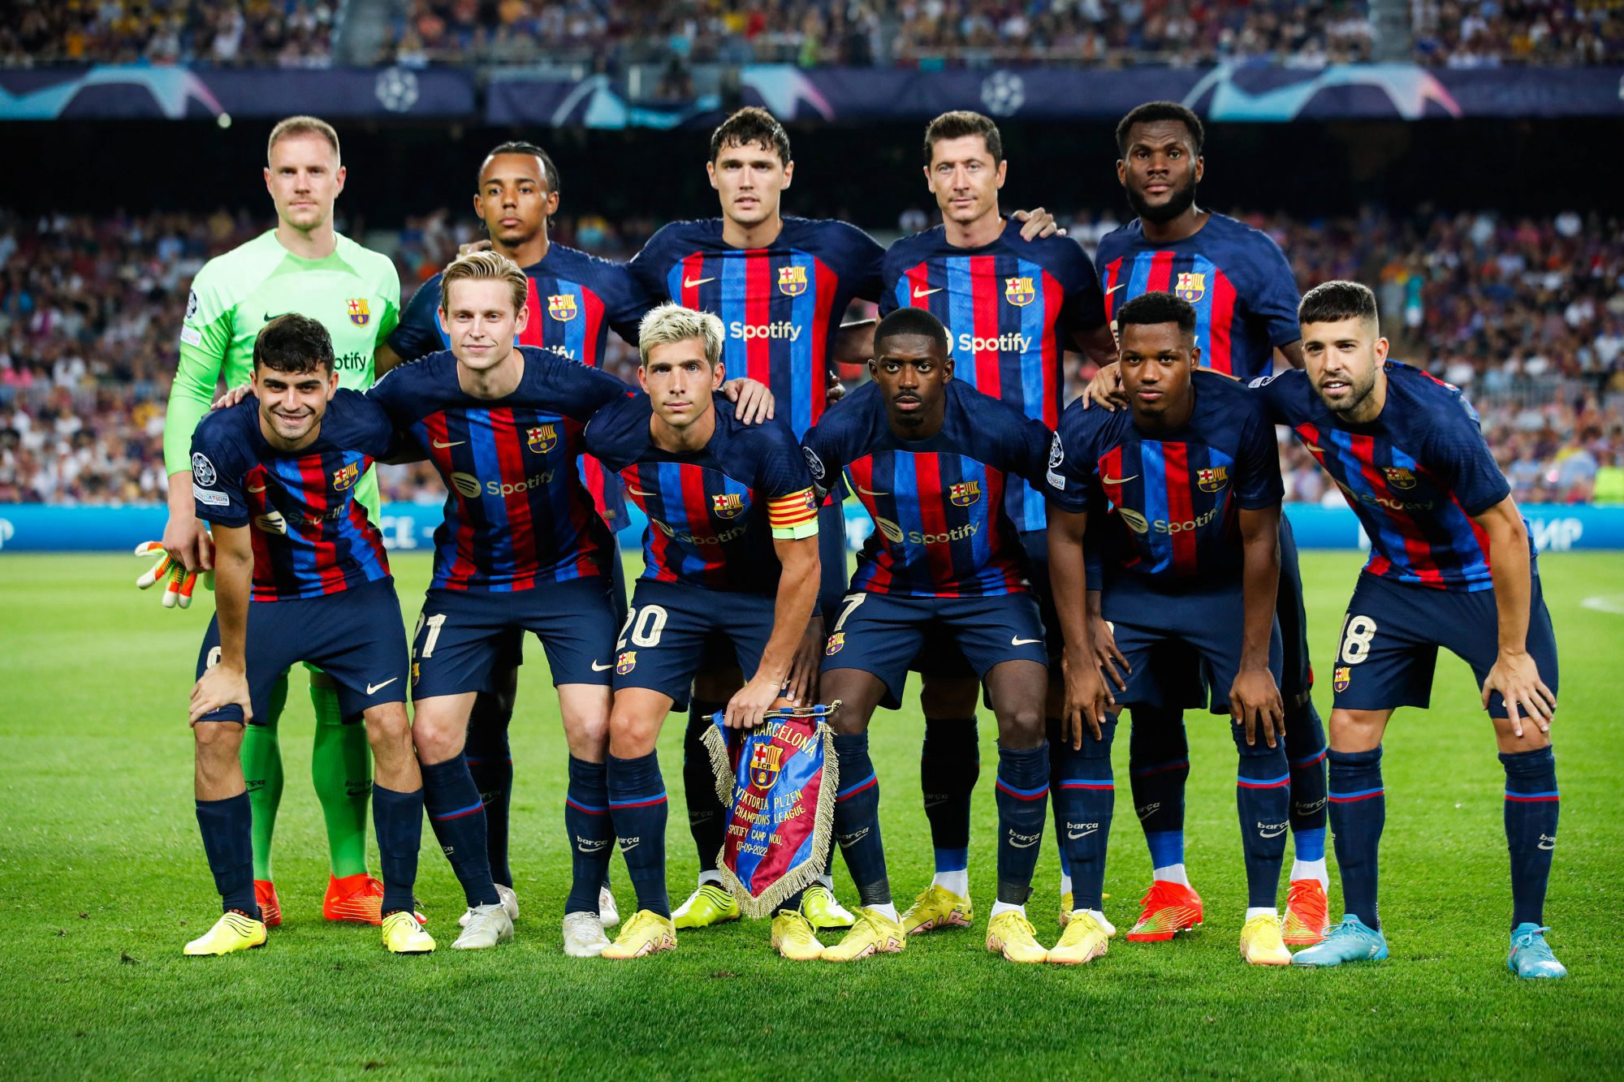 L'équipe de Barcelone